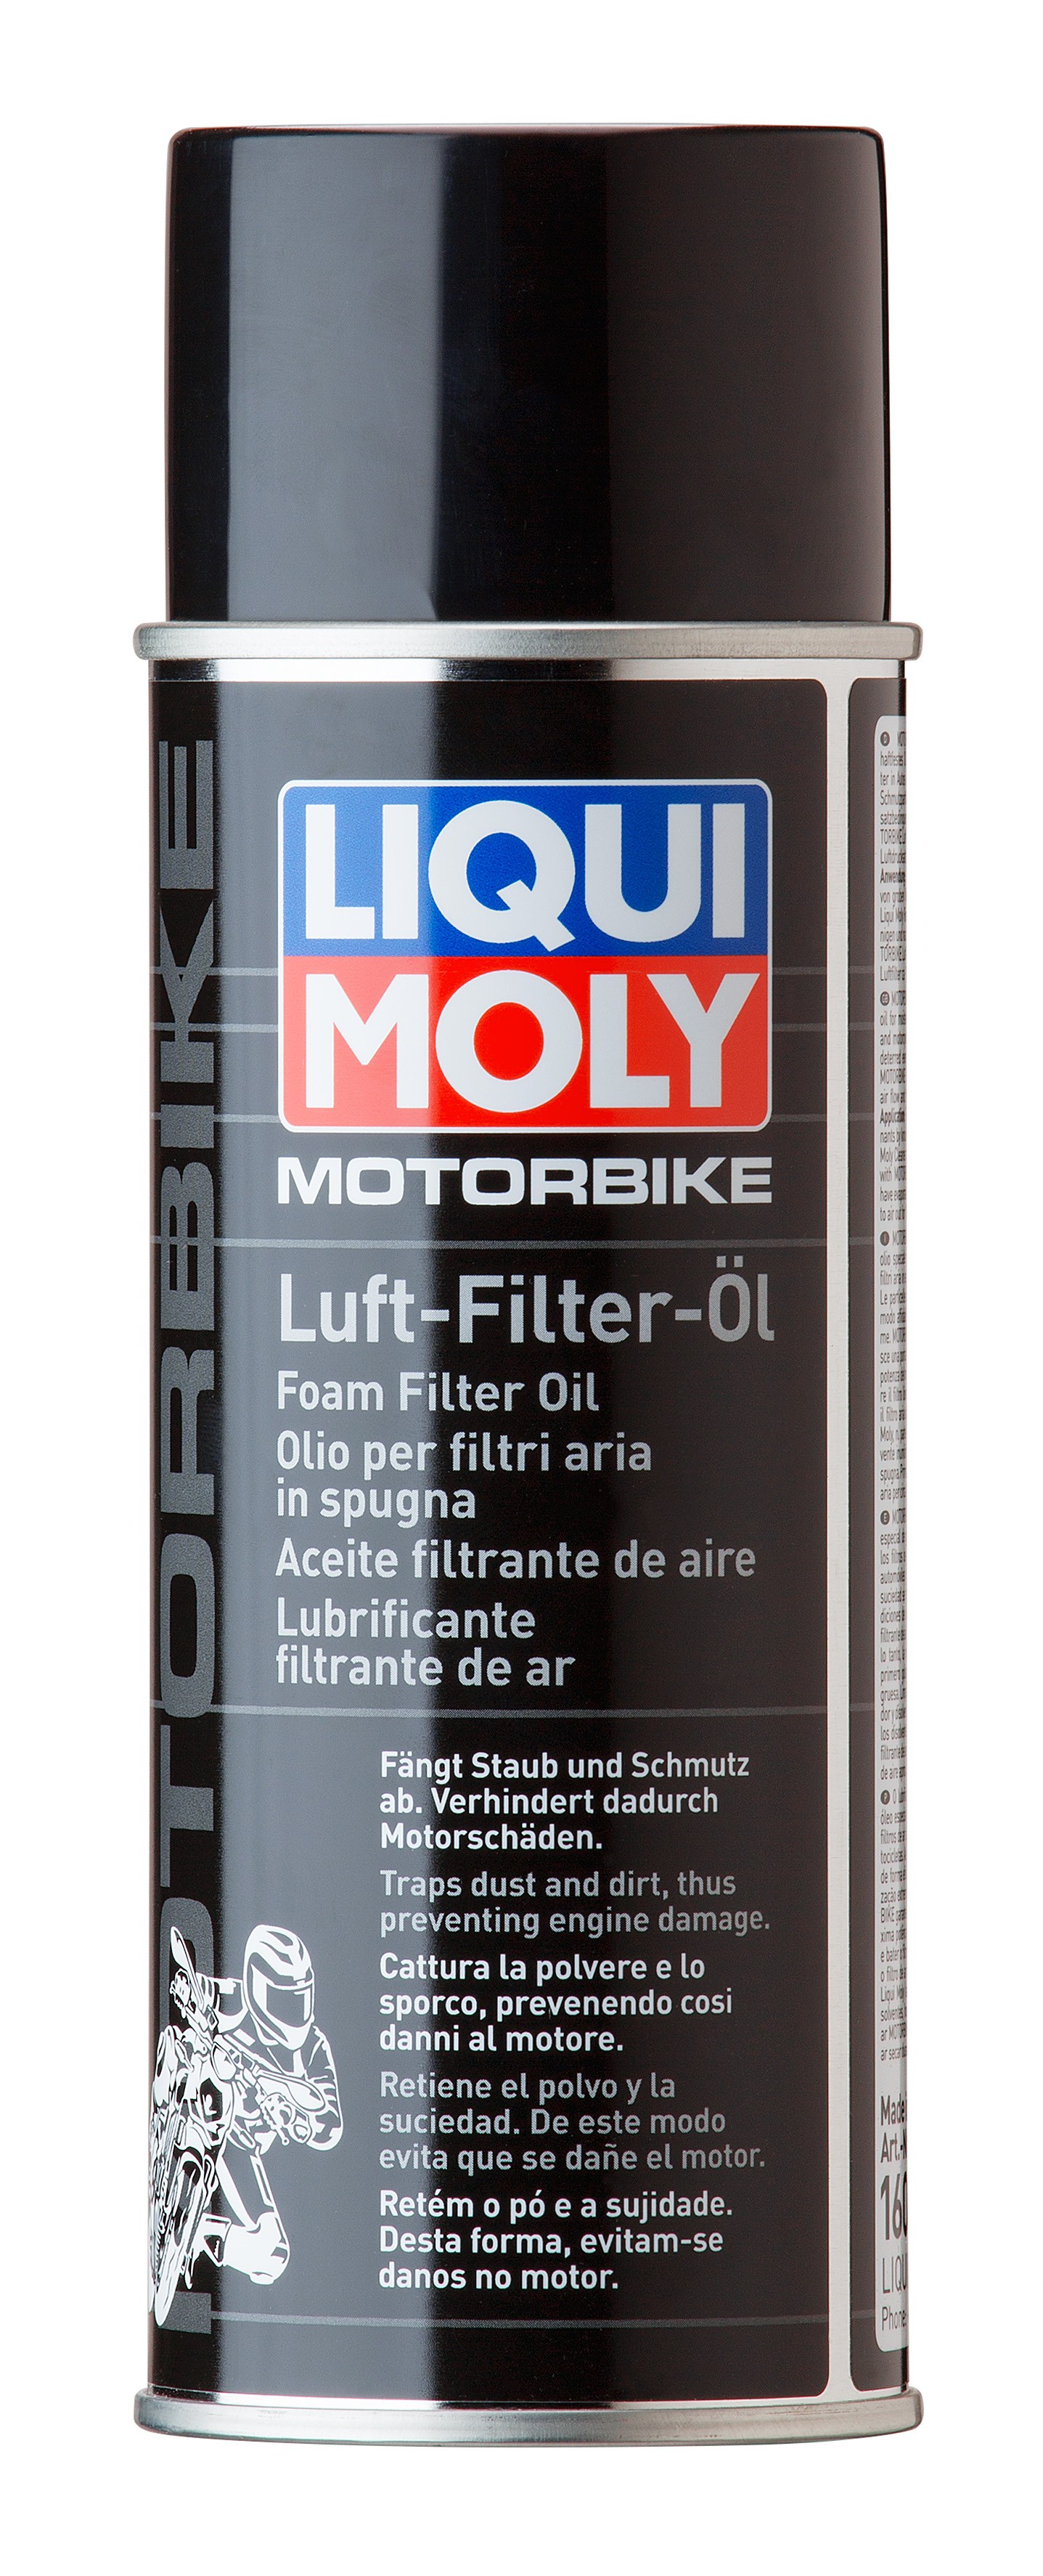 Liqui Moly Motorbike 1604 Luft Filter Öl Spray Foam Filter Oil Luftfilteröl 400 ml